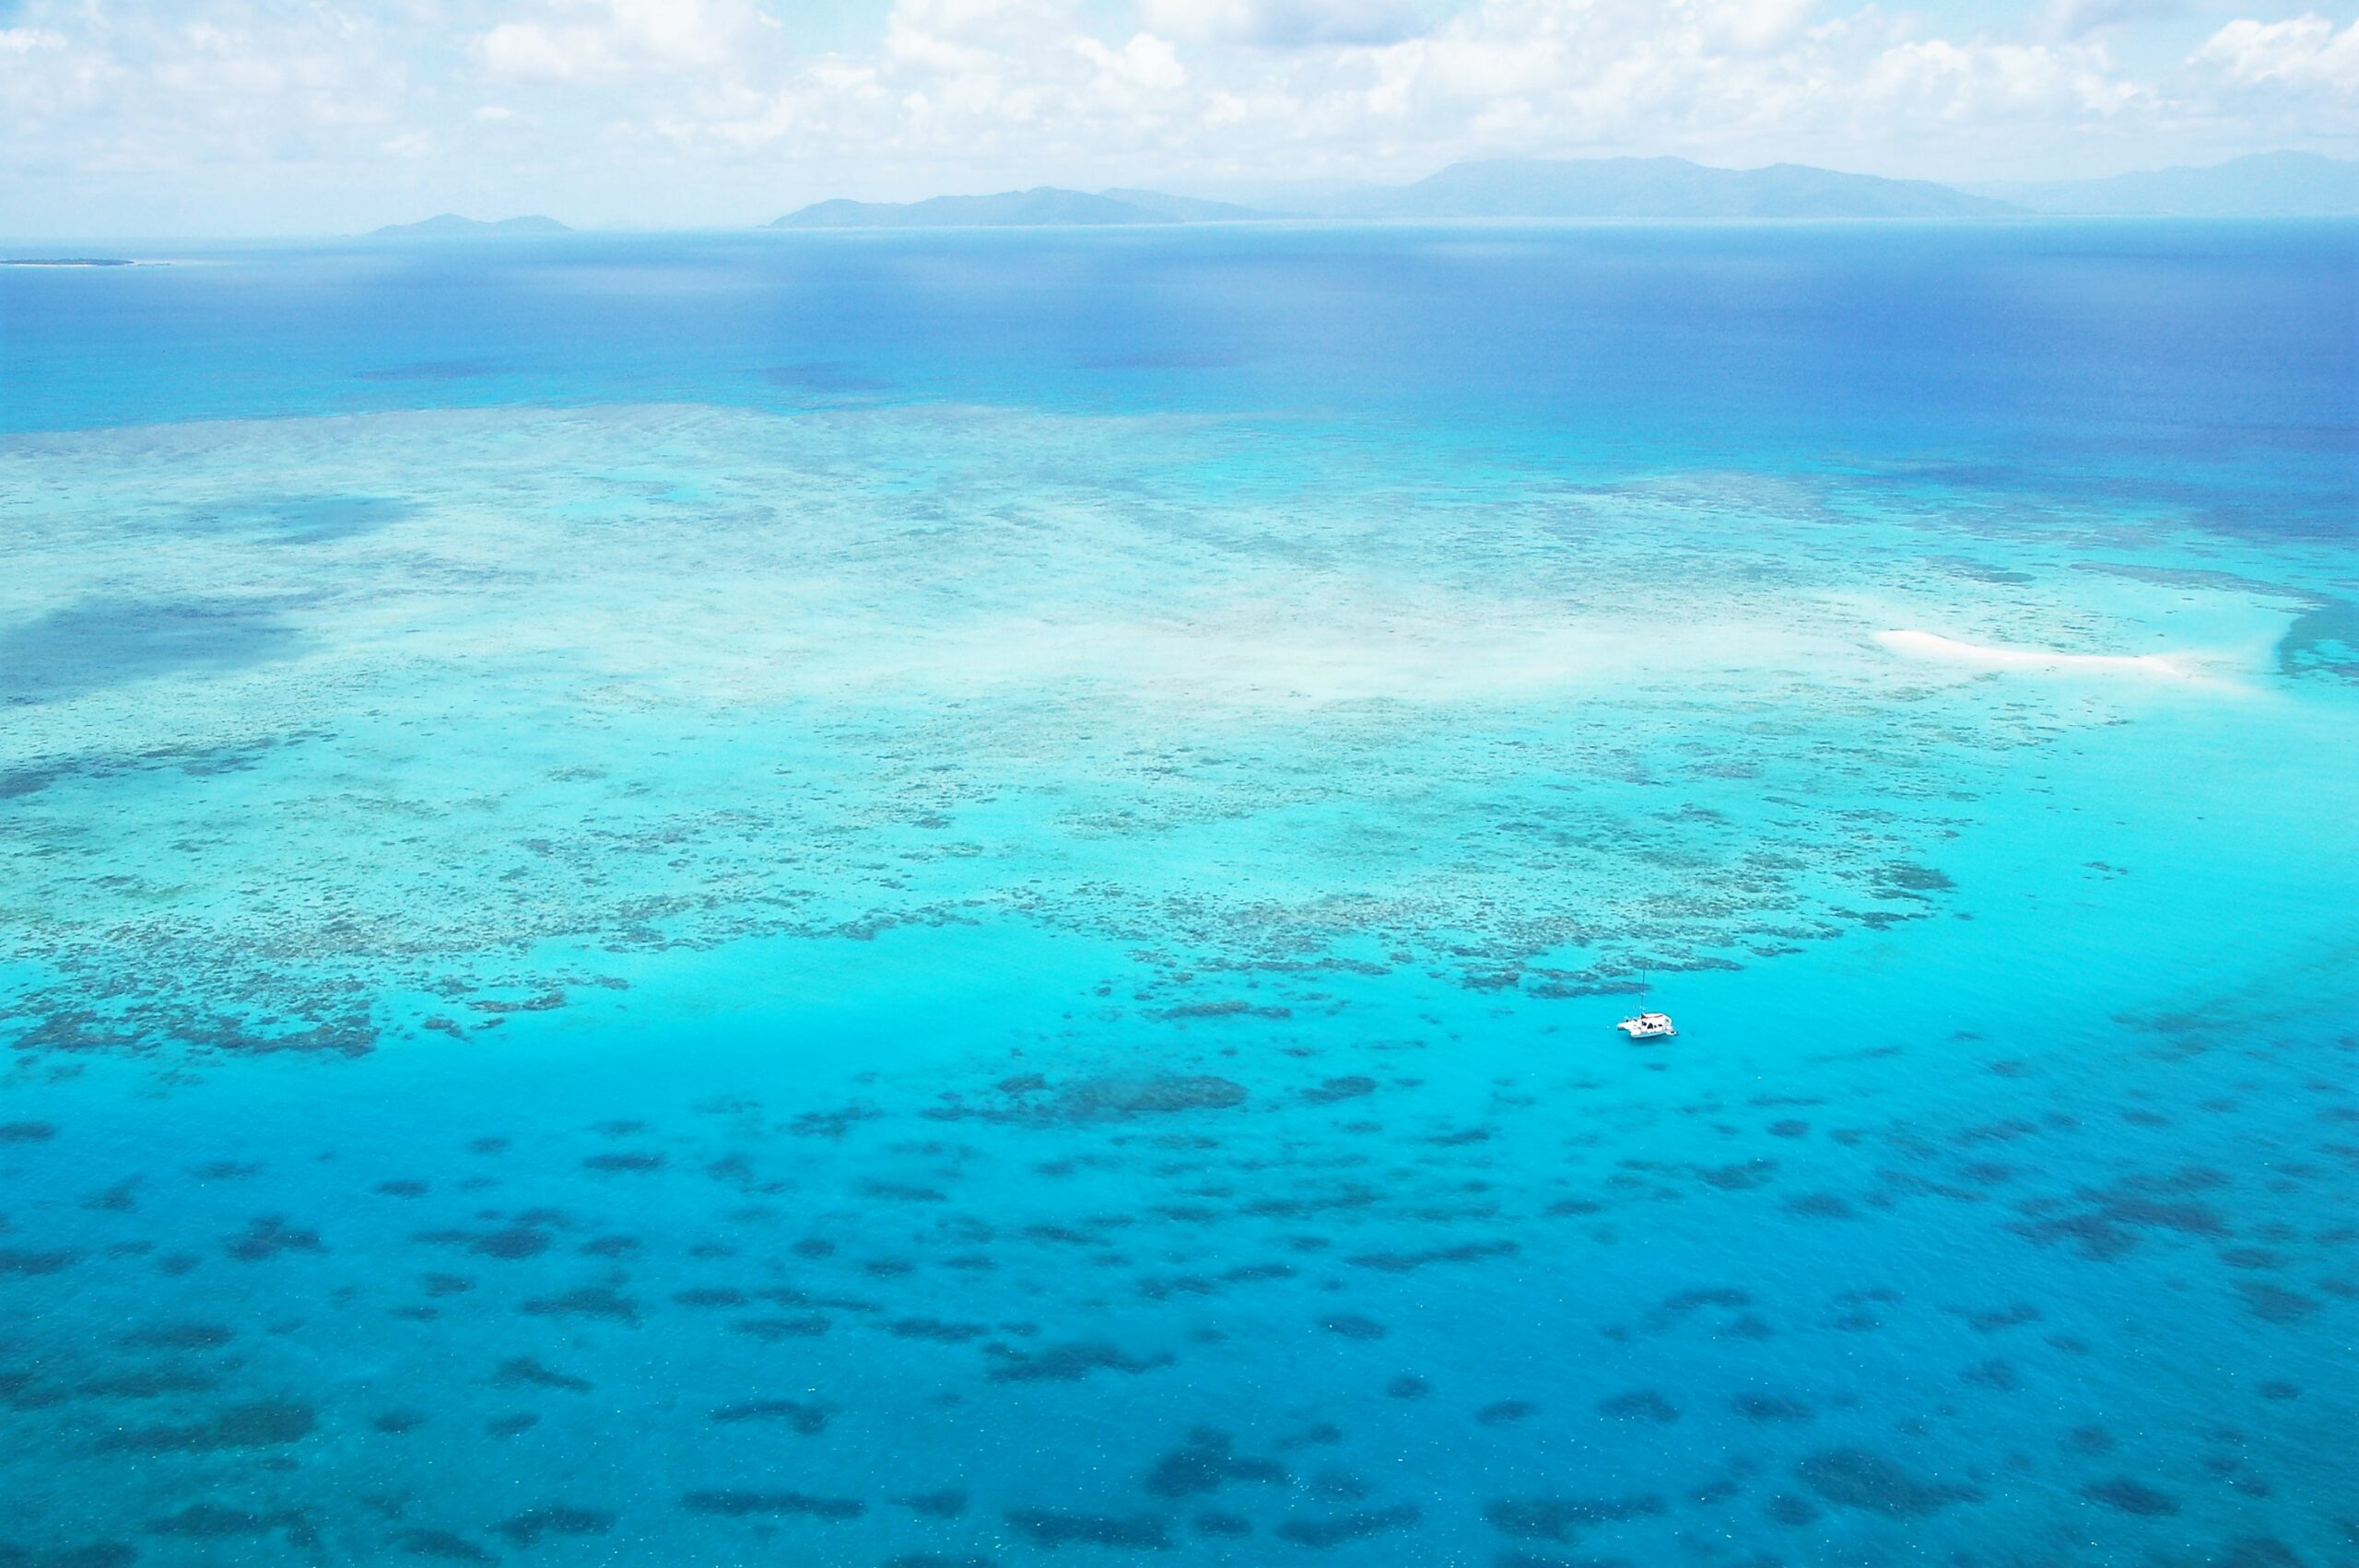 WOW Great Barrier Reef - 60mins